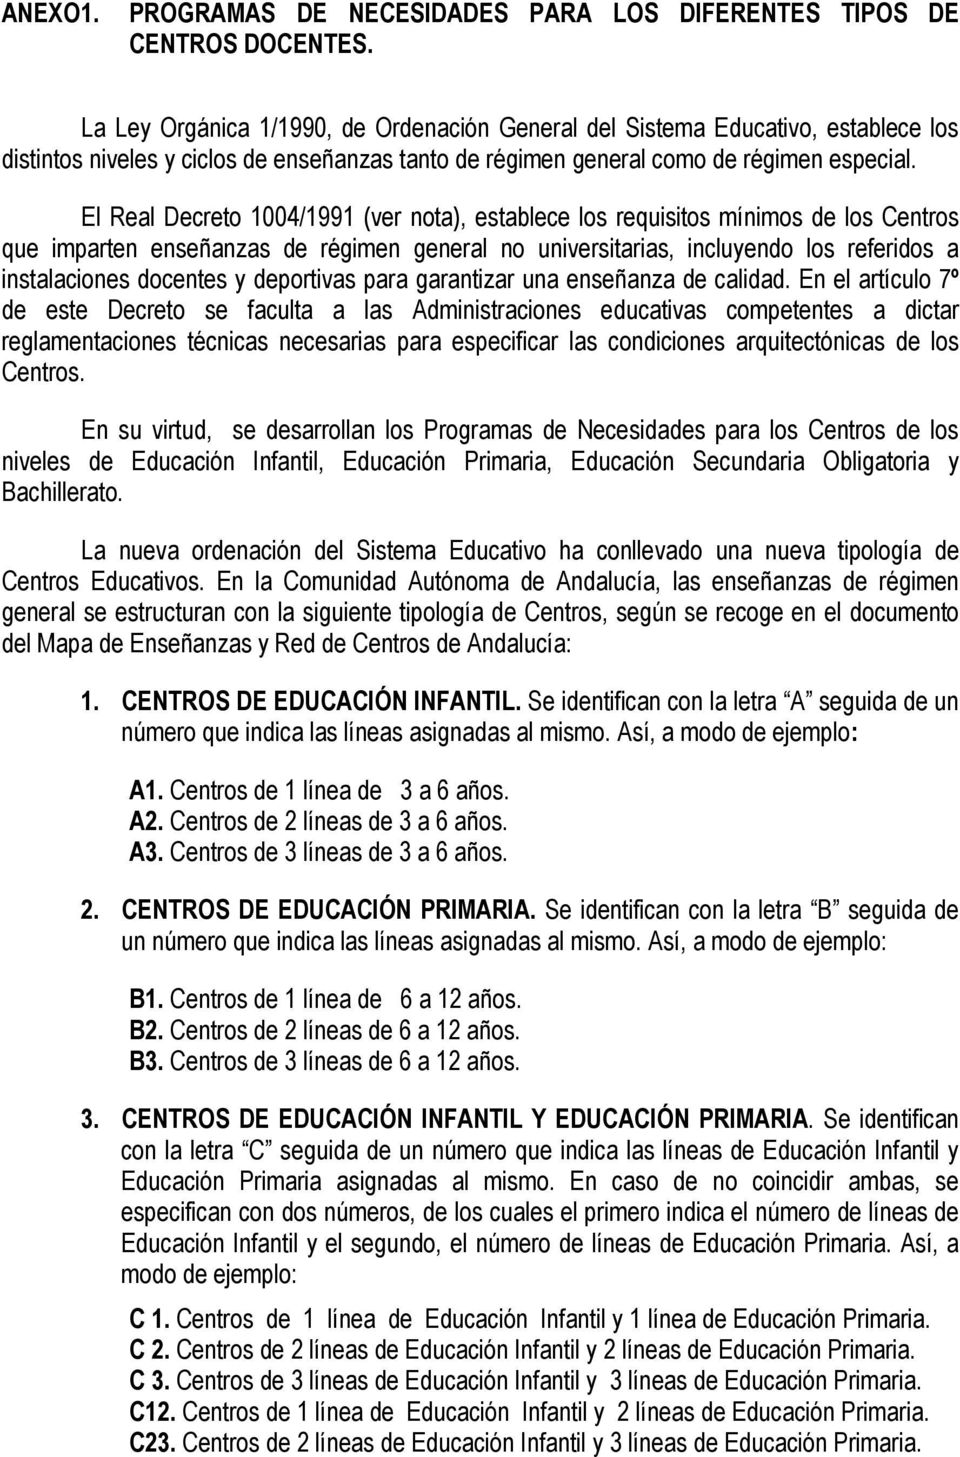 El Real Decreto 1004/1991 (ver nota), establece los requisitos mínimos de los Centros que imparten enseñanzas de régimen general no universitarias, incluyendo los referidos a instalaciones docentes y